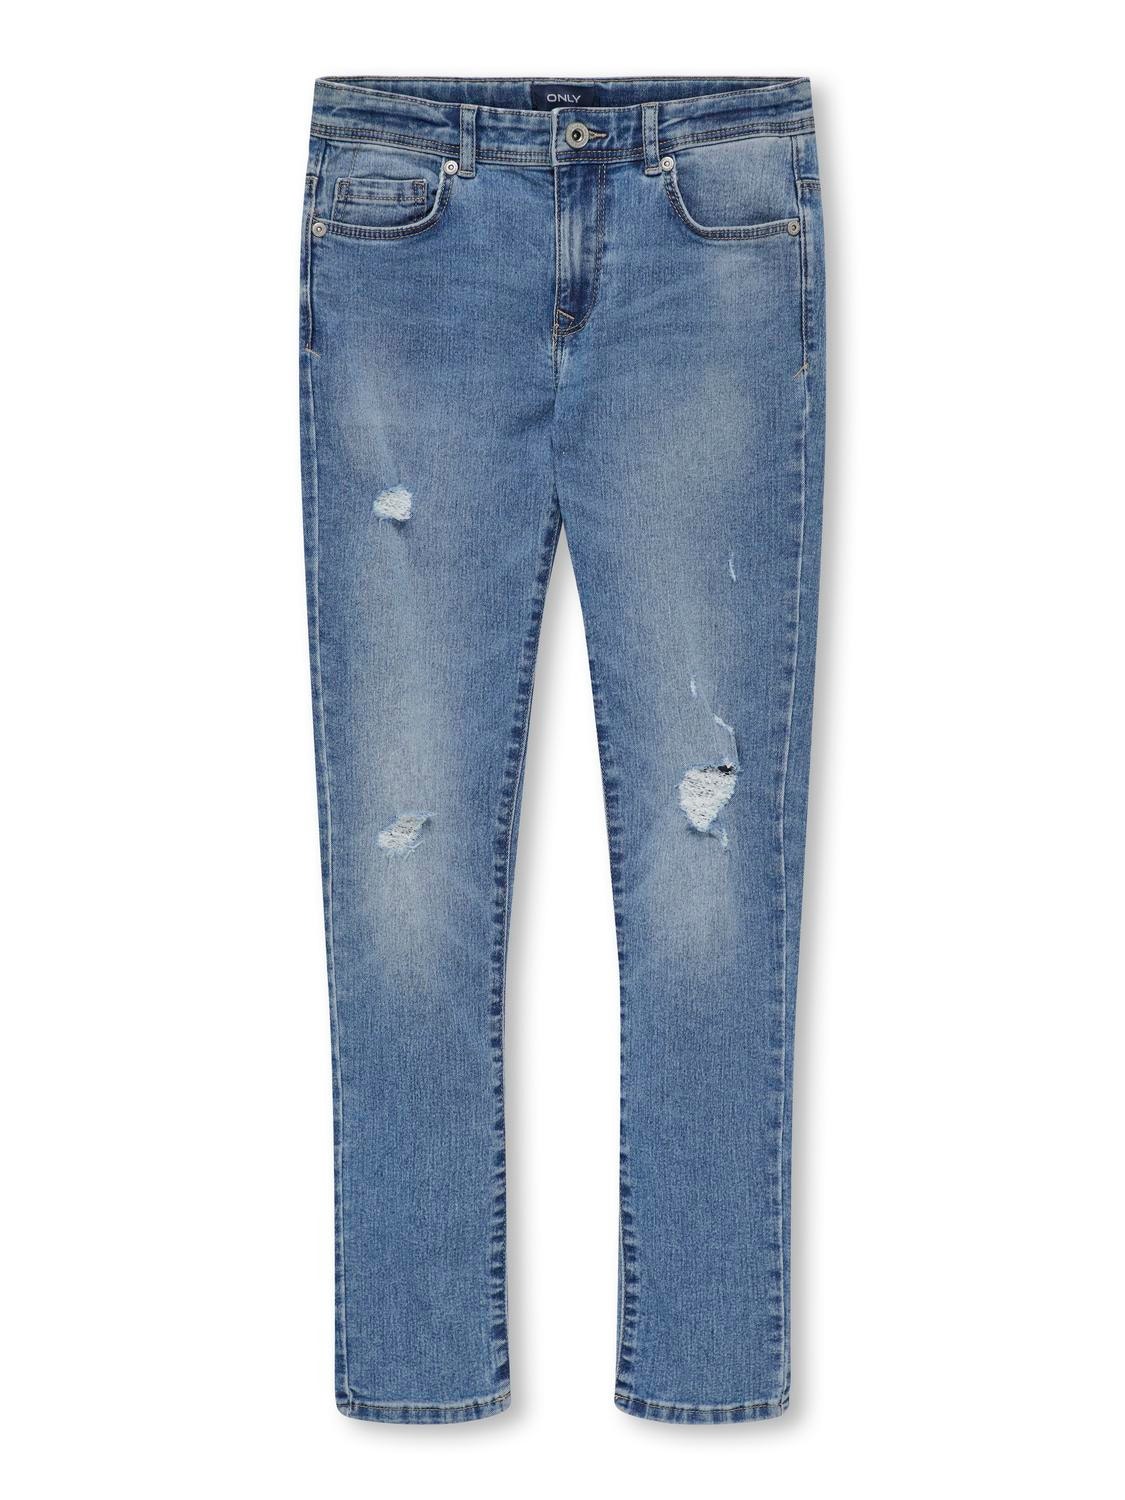 ONLY Jeans Skinny Fit -Light Blue Denim - 15280012